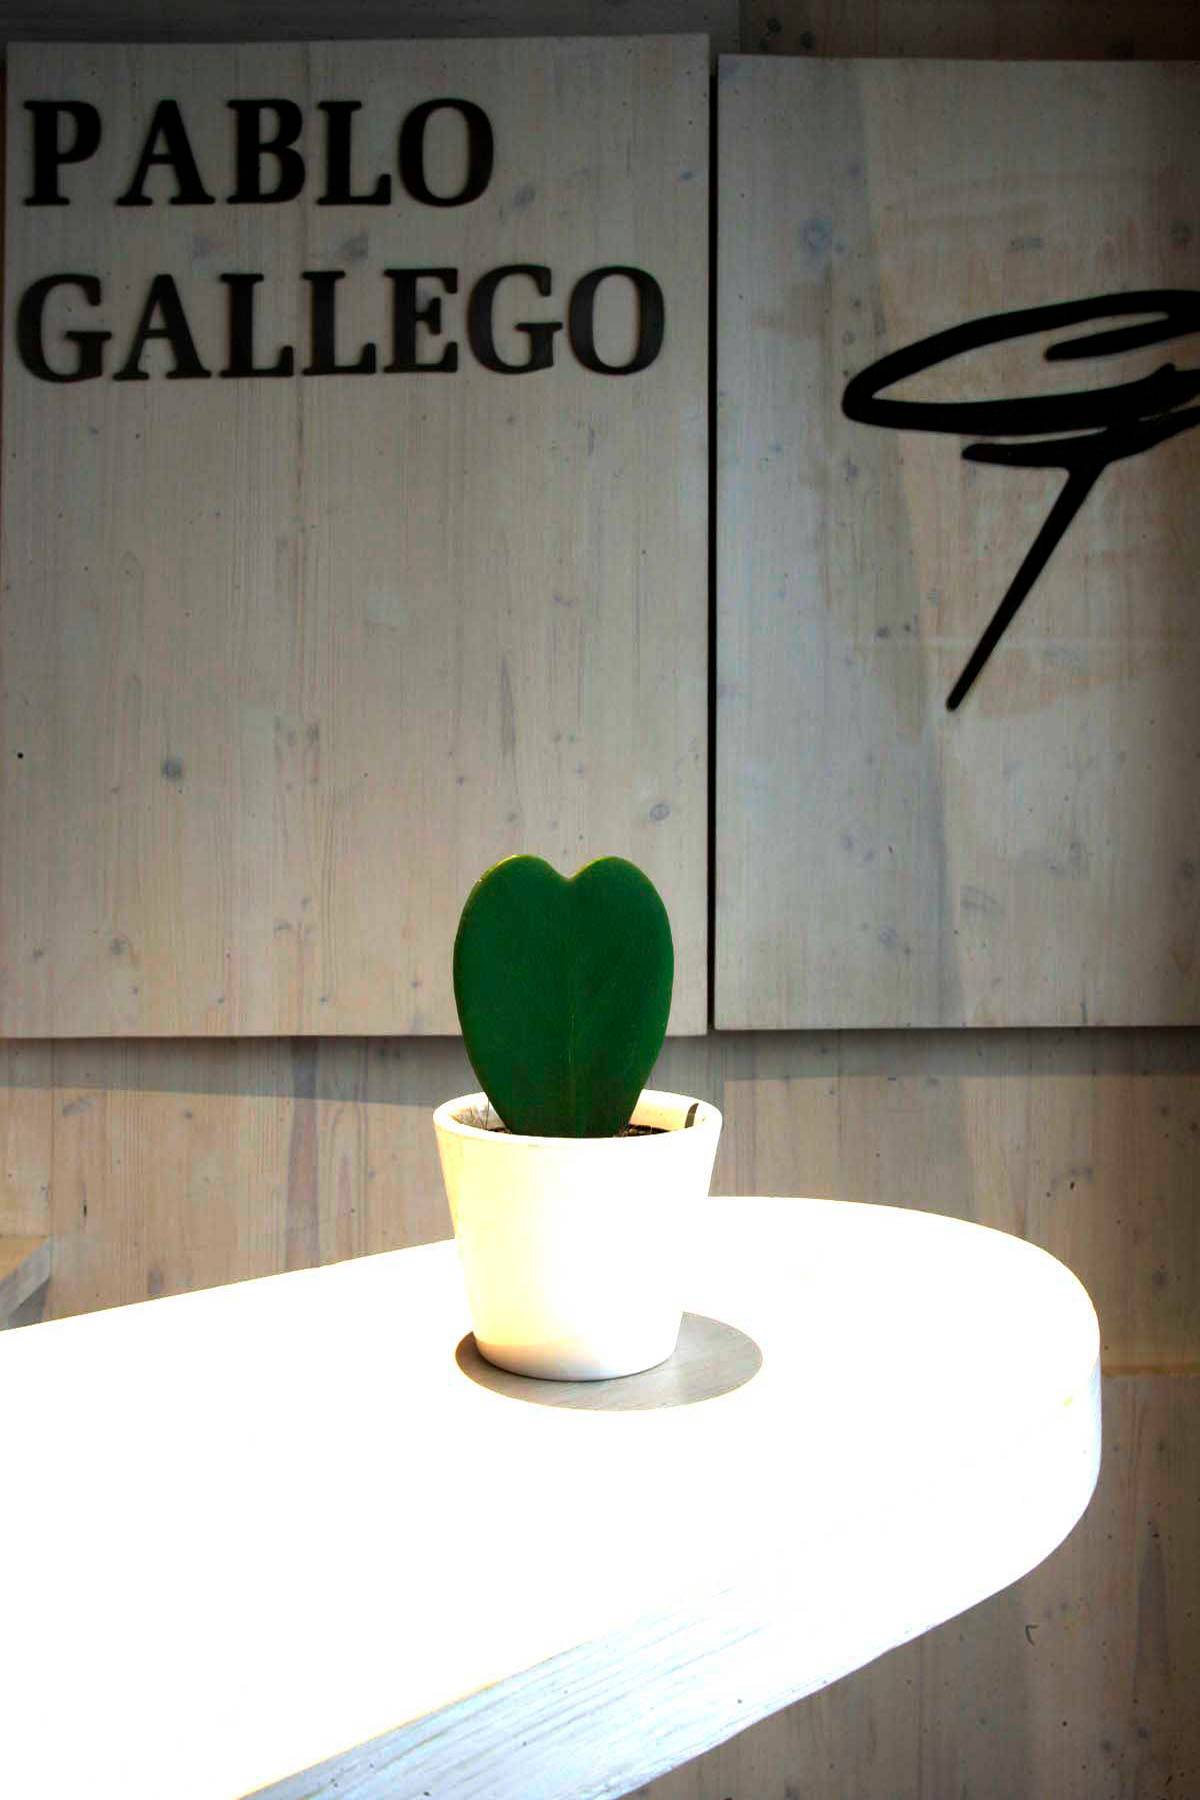 Cocina gallega creativa especializada en marisco con una decoración clásica y moderna ubicada en el centro de A Coruña.          